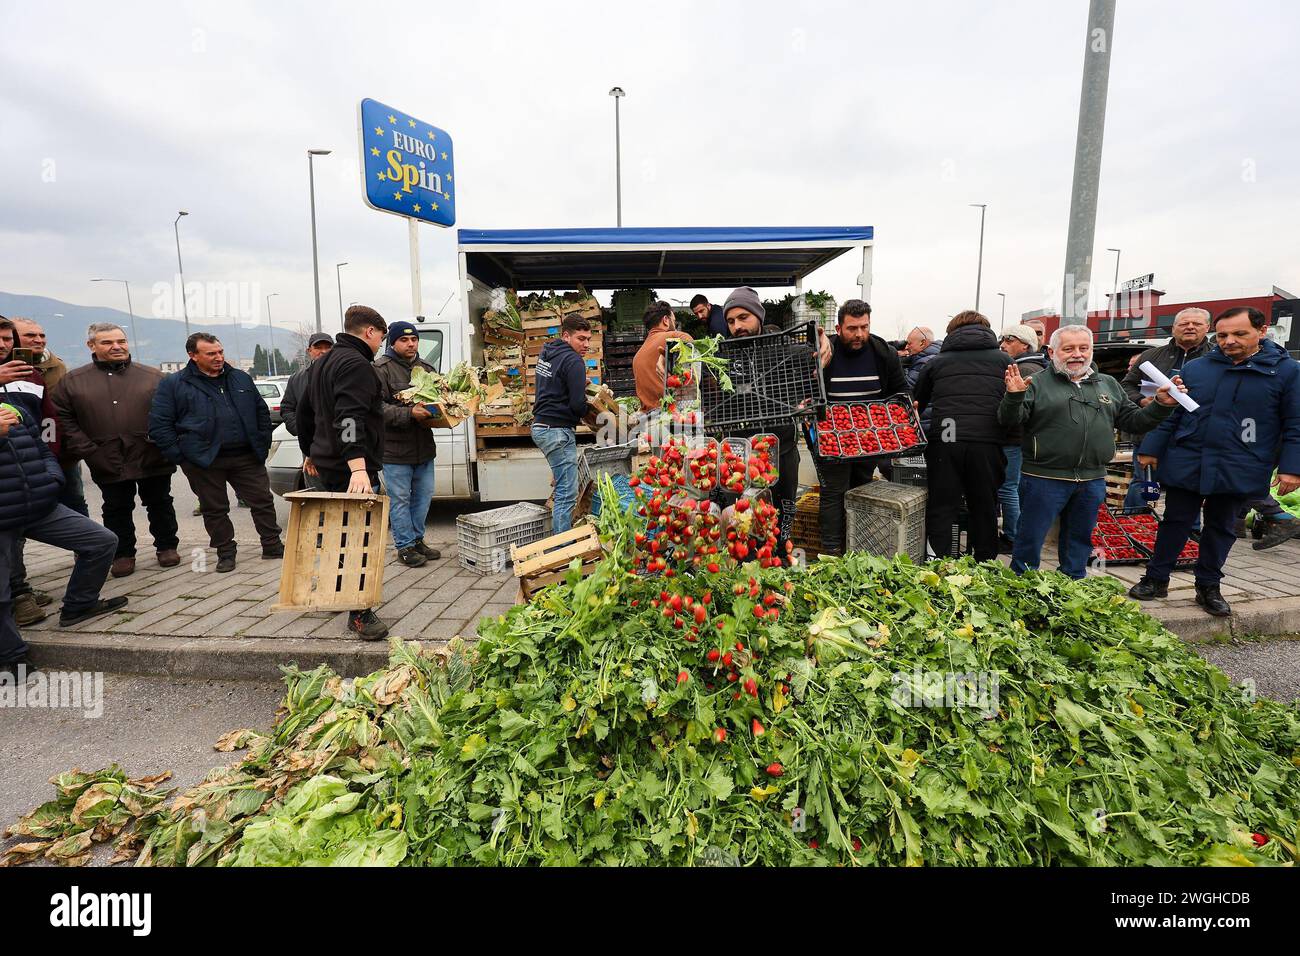 Les agriculteurs jettent leurs produits, fruits et légumes, lors de la manifestation pour protester contre les initiatives du «pacte vert», approuvées par l'UE Banque D'Images